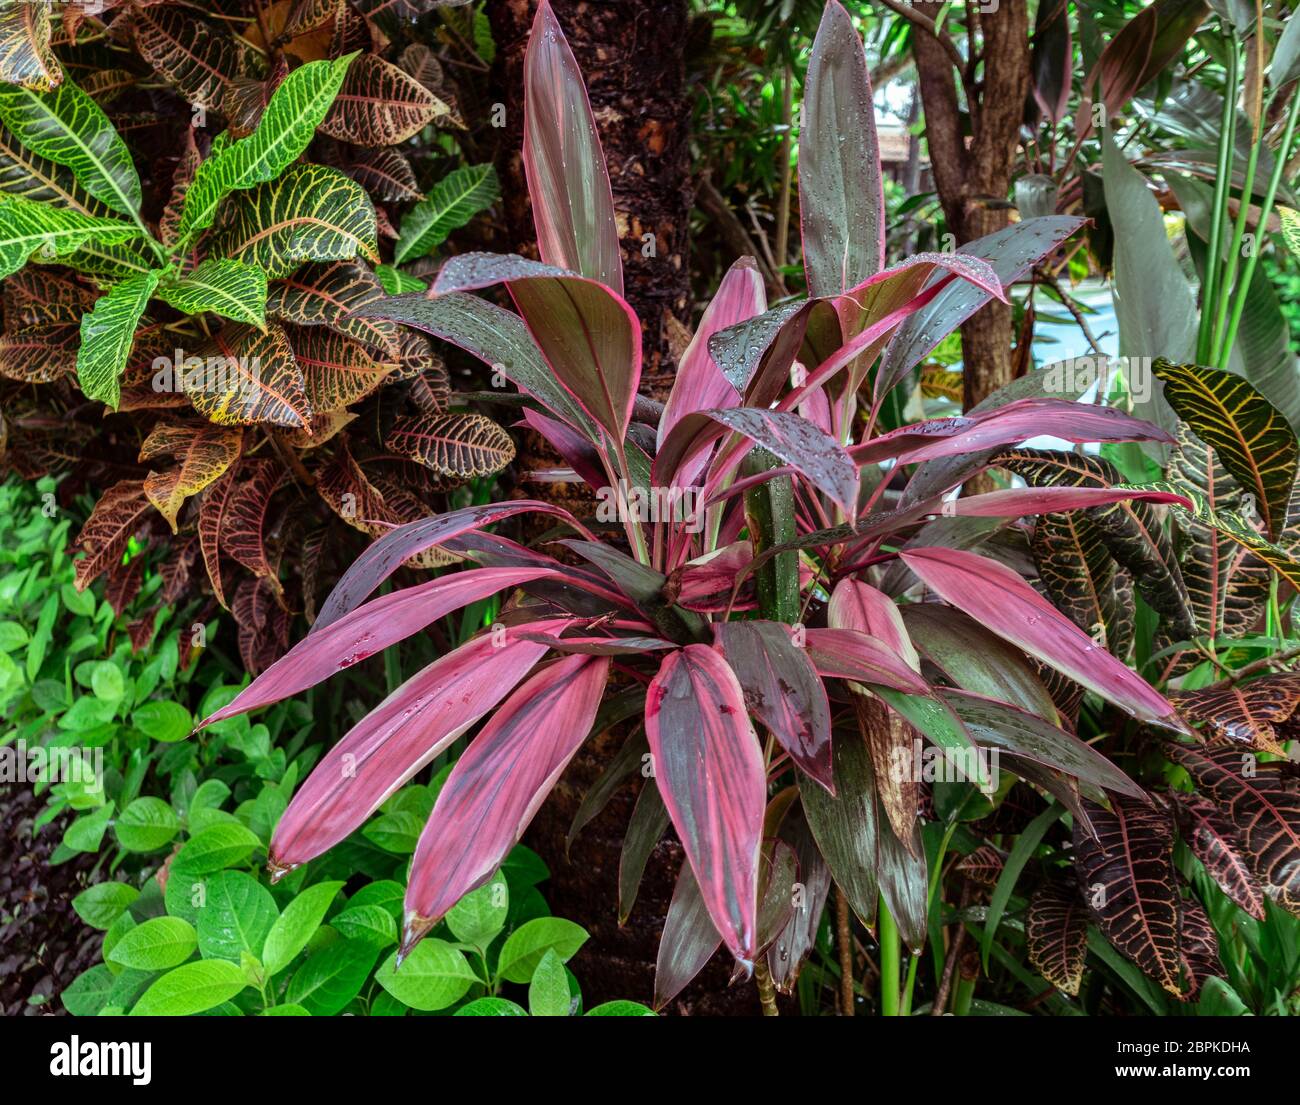 Tropische Zierpflanze cordyline Purple Prince, cordyline fruticosa mit rosa Klingenblättern, im Bali Indonesia Regenwald Stockfoto